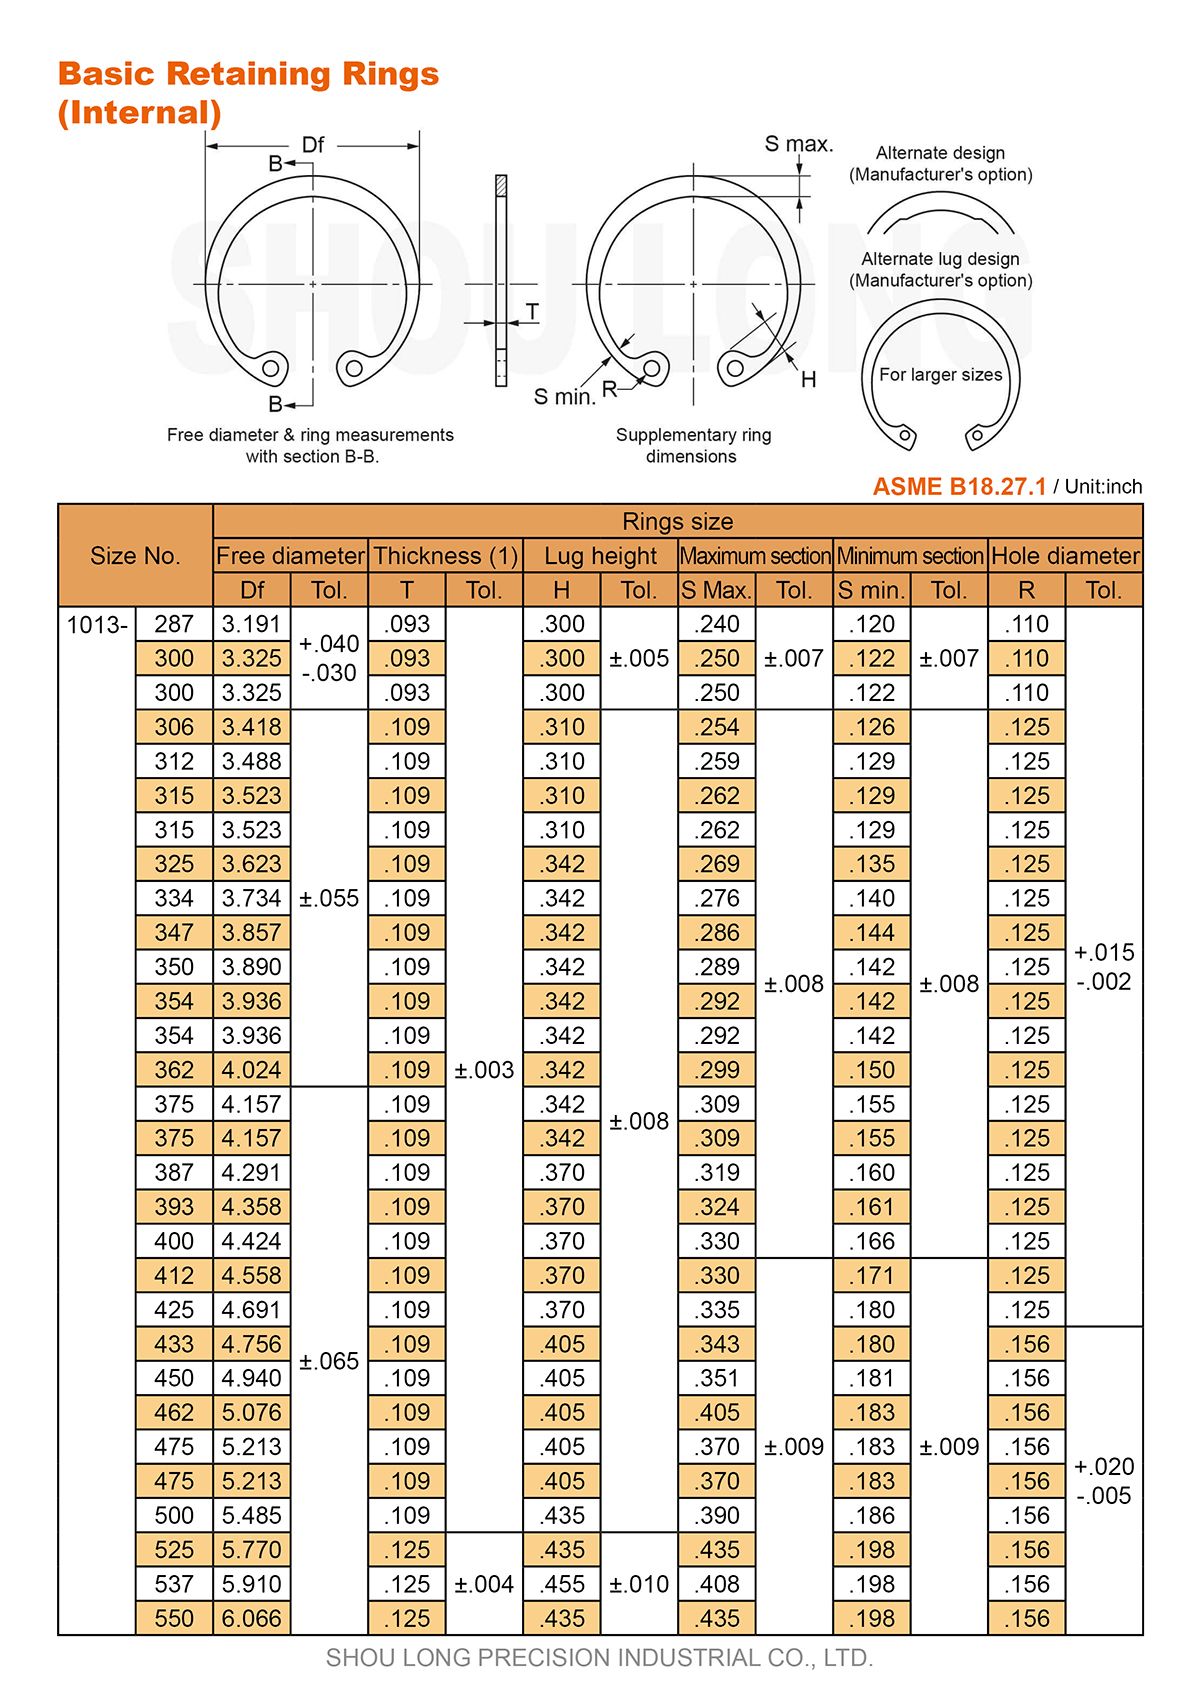 Especificação de Anéis de Retenção Básicos em Polegadas para Furos ASME/ANSI B18.27.1-3